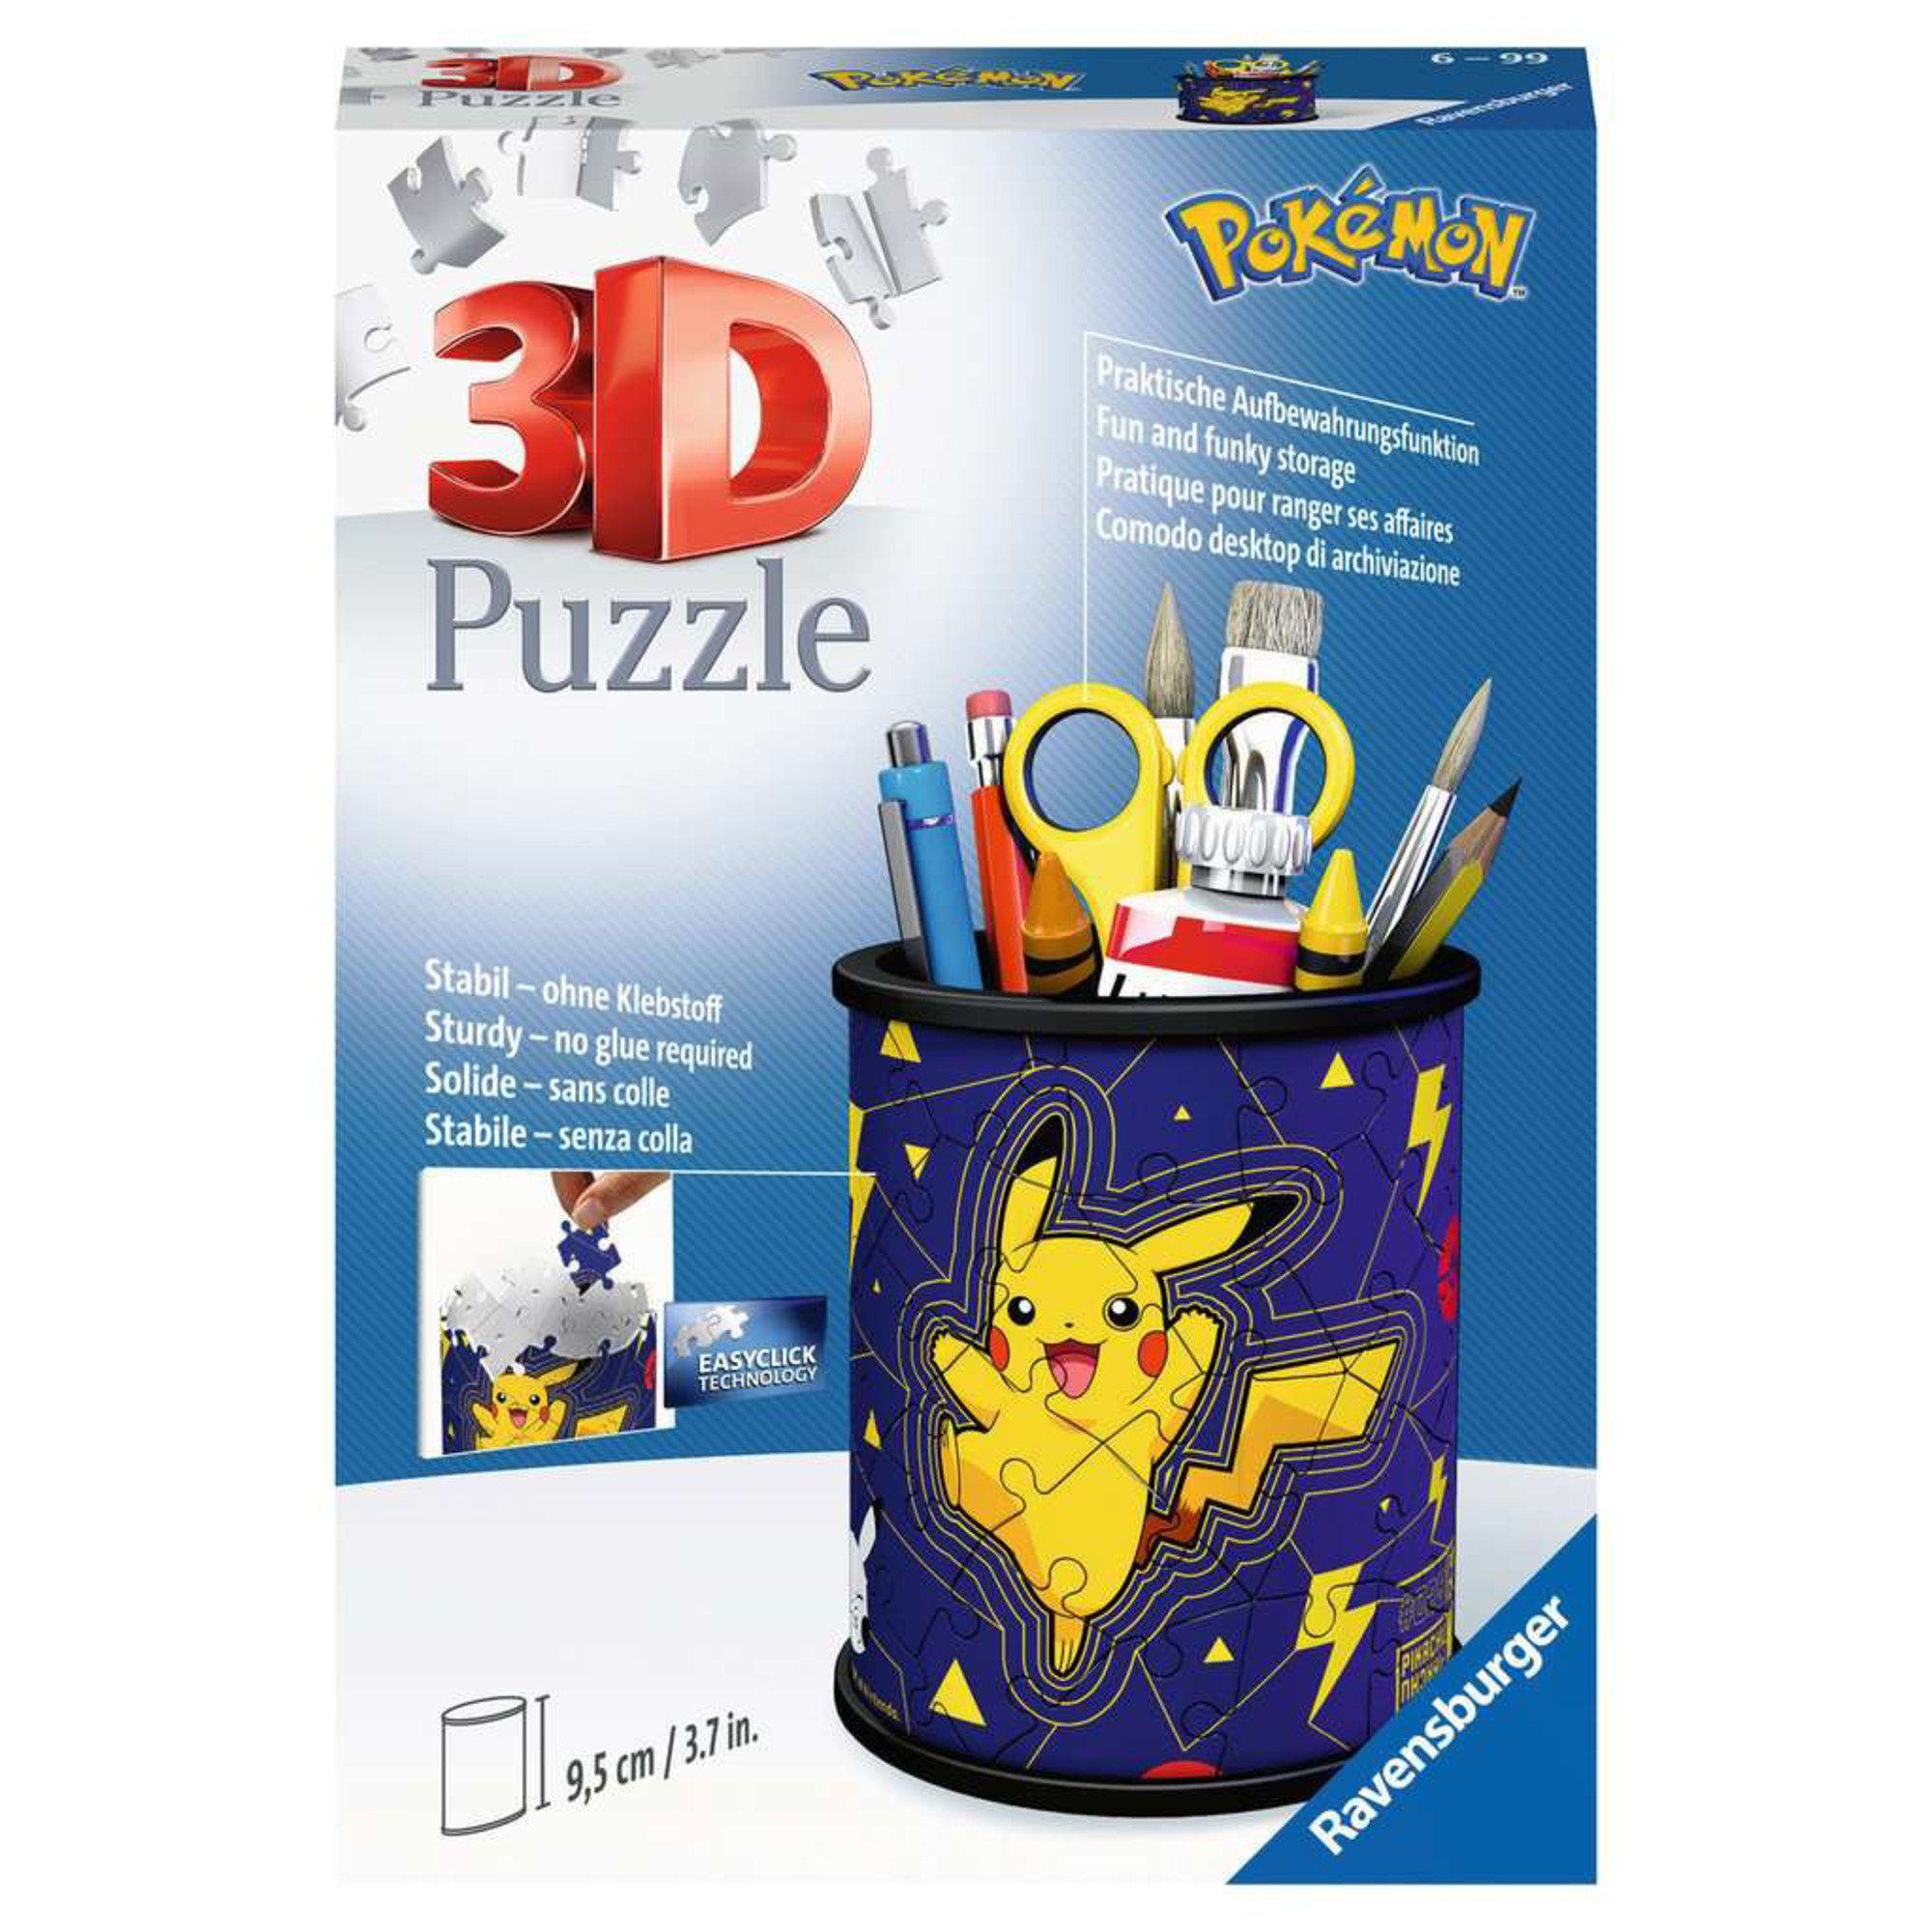 Puzzleteile Pokémon, Ravensburger 3D Ravensburger Puzzle Puzzle Utensilo